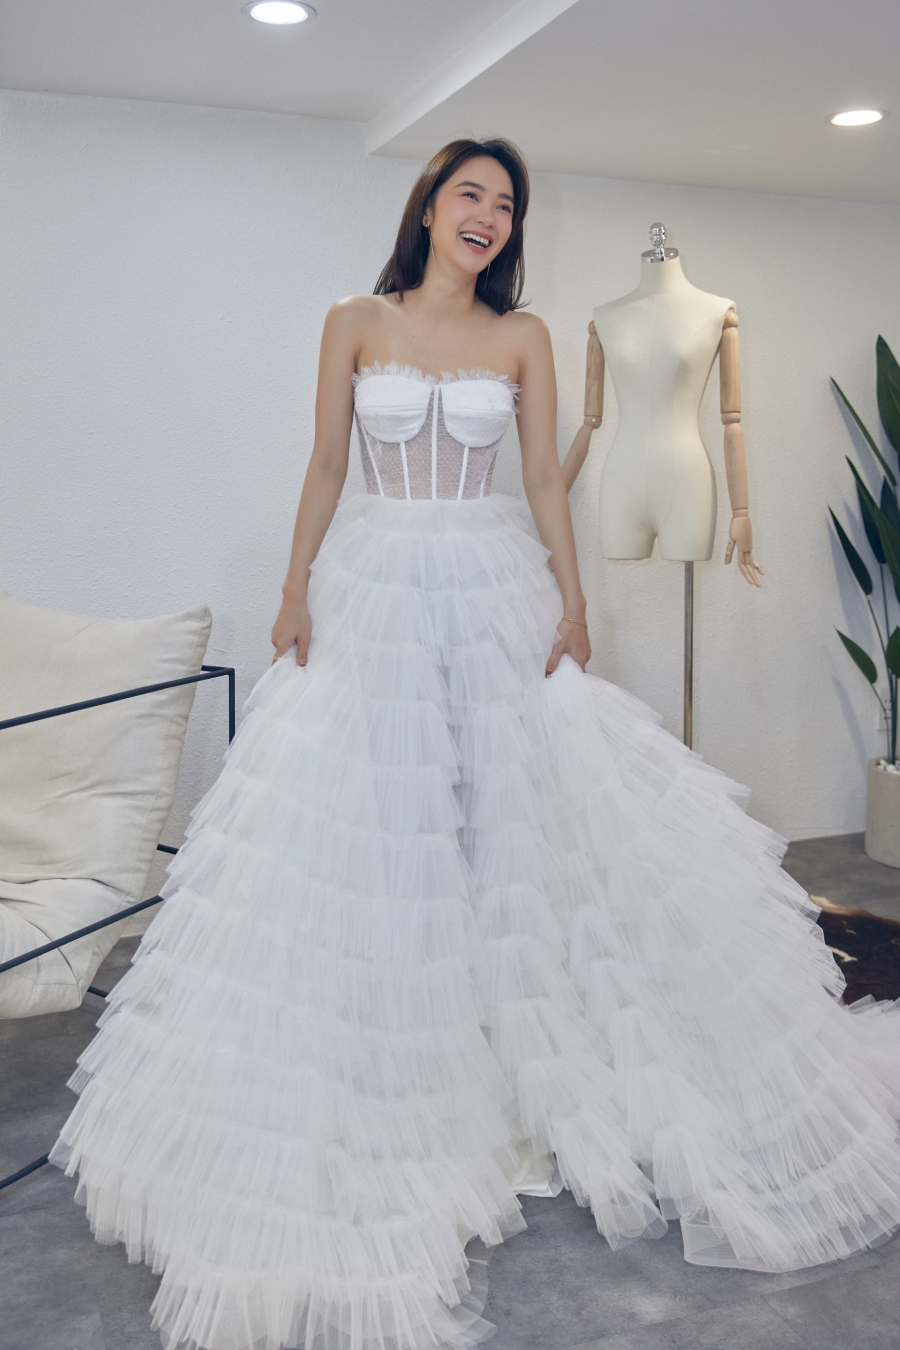 Vừa thử váy cưới Minh Hằng đã thoát vai để 'hóa' nữ doanh nhân sành điệu - Ảnh 9